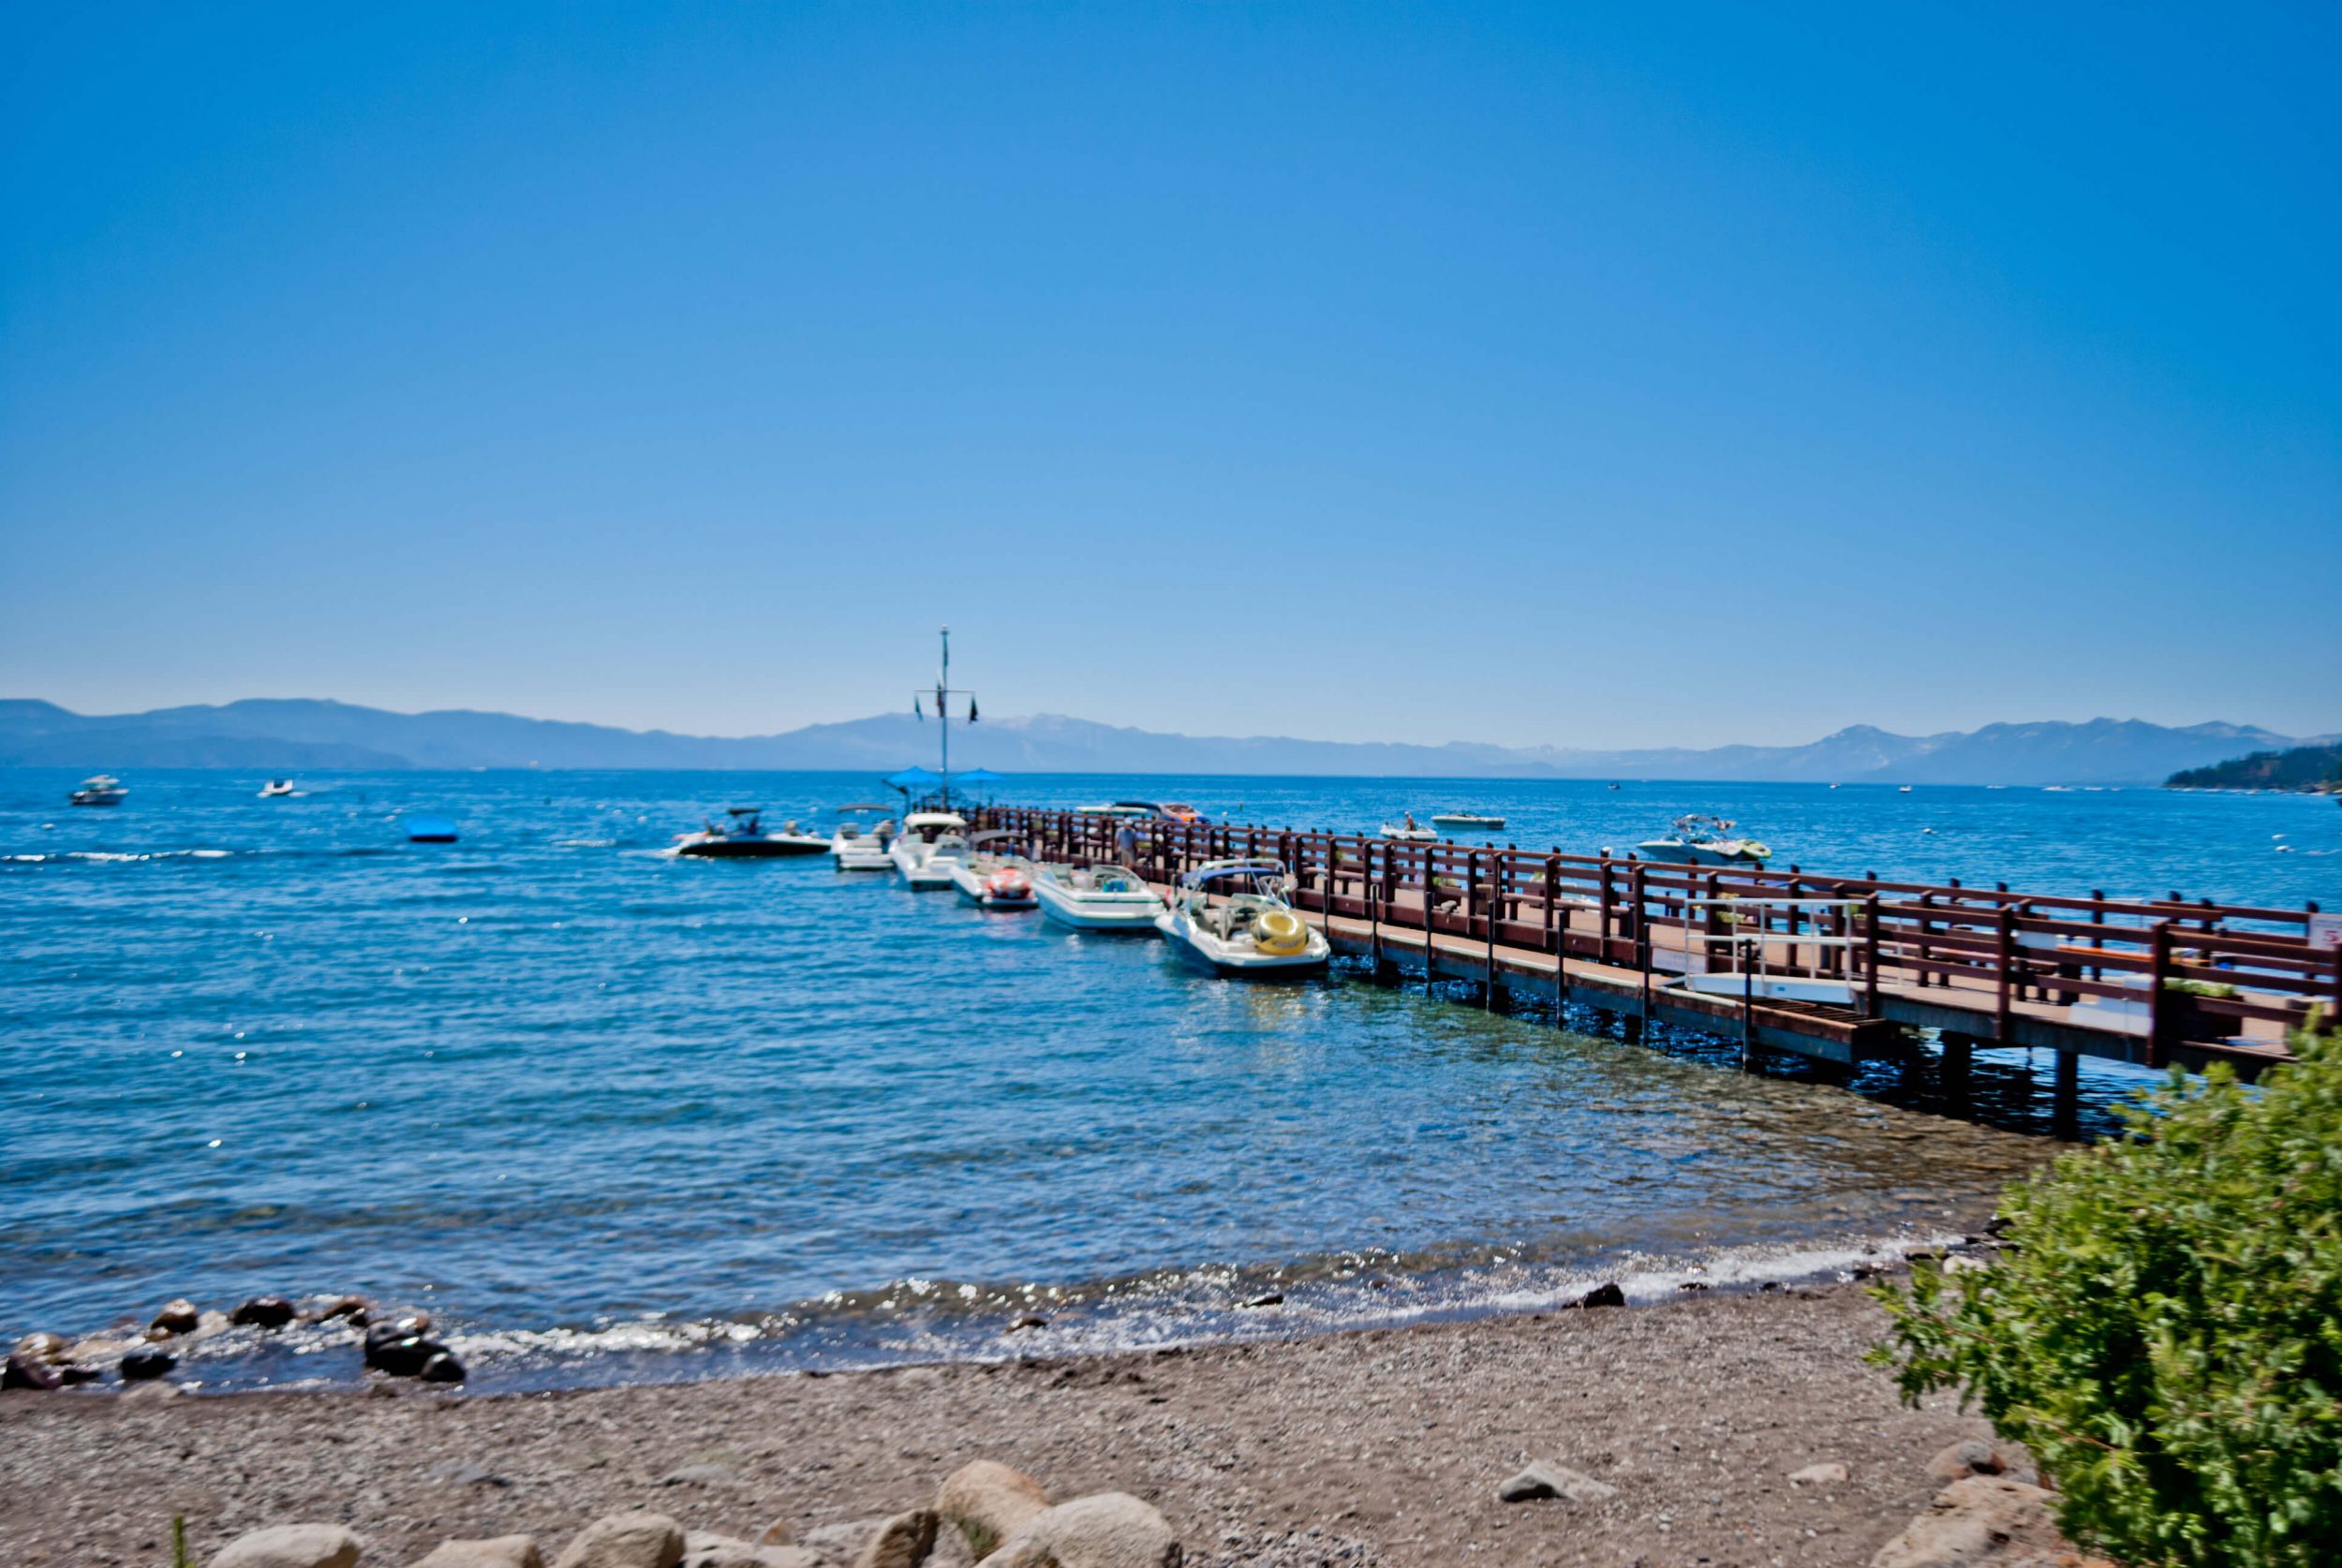 Gar Woods in Lake Tahoe: Boat Dock / Pier, 2012 Copyright Christine Hull, Windy Pinwheel